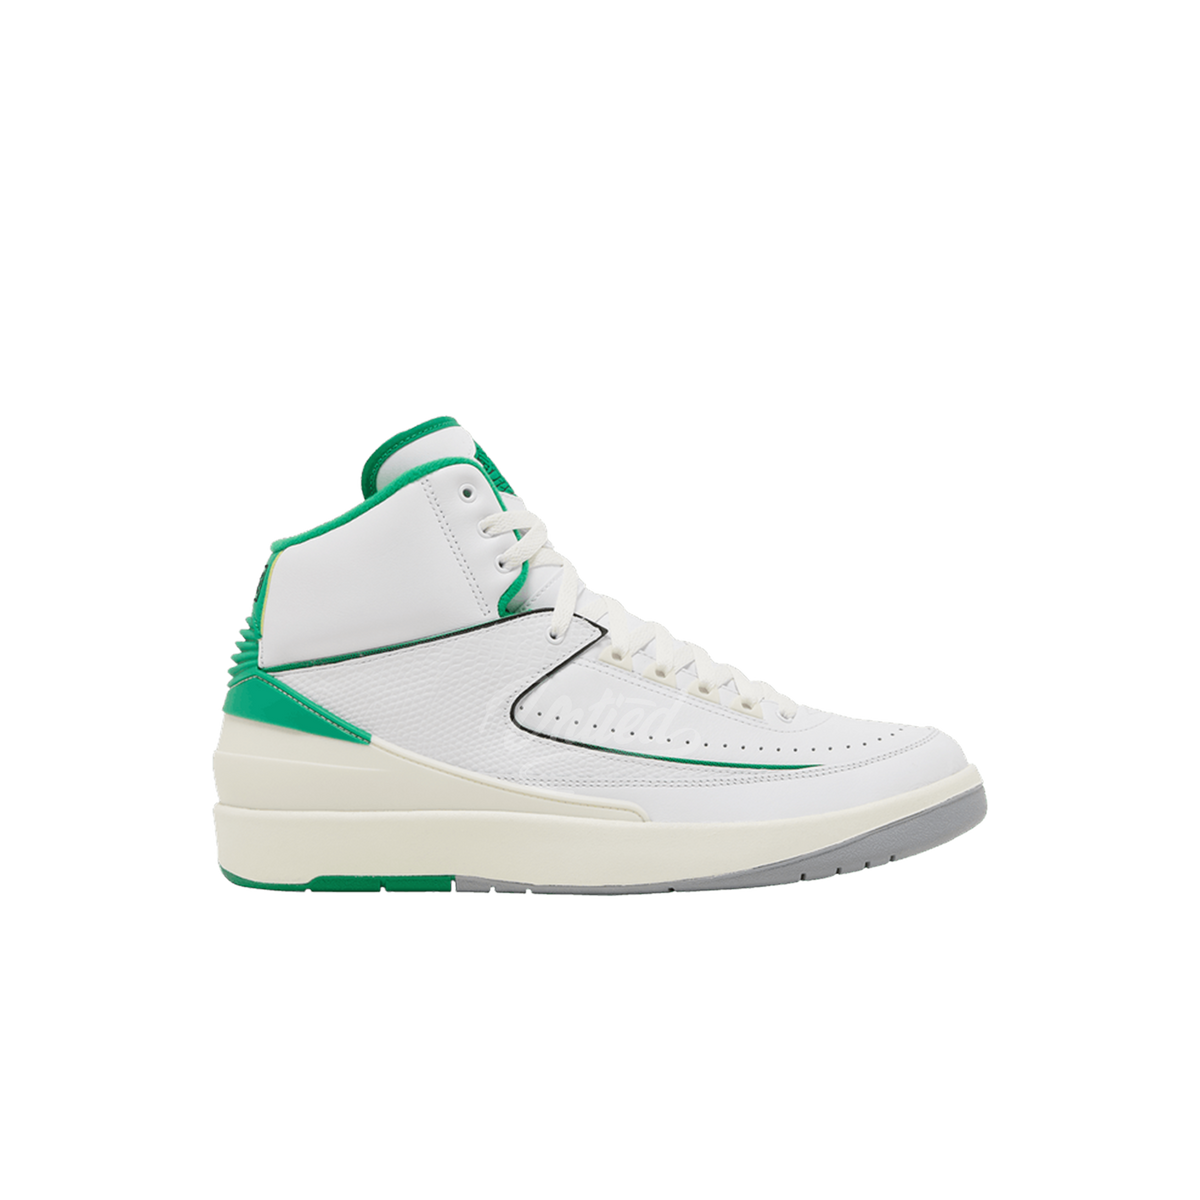 Air Jordan 2 "Lucky Green"